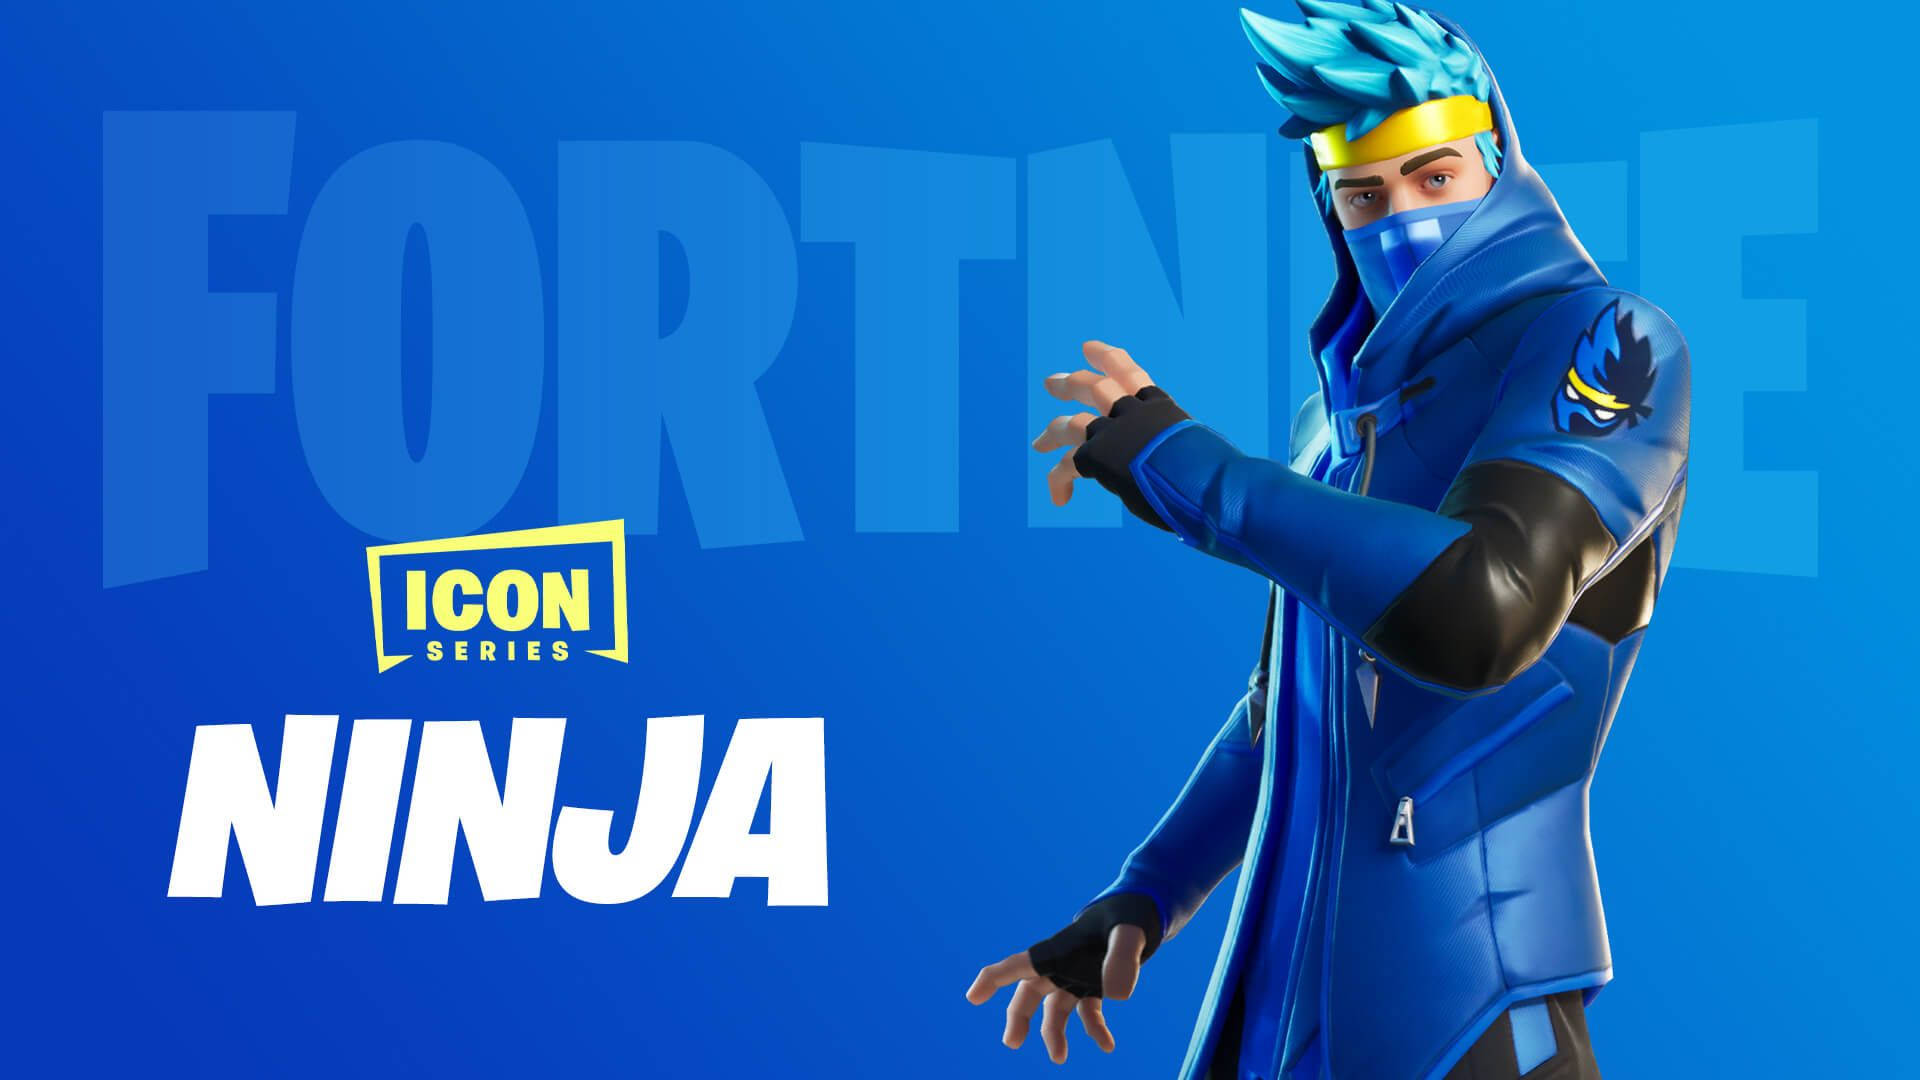 Ninja Fortnite Official Avatar Wallpaper